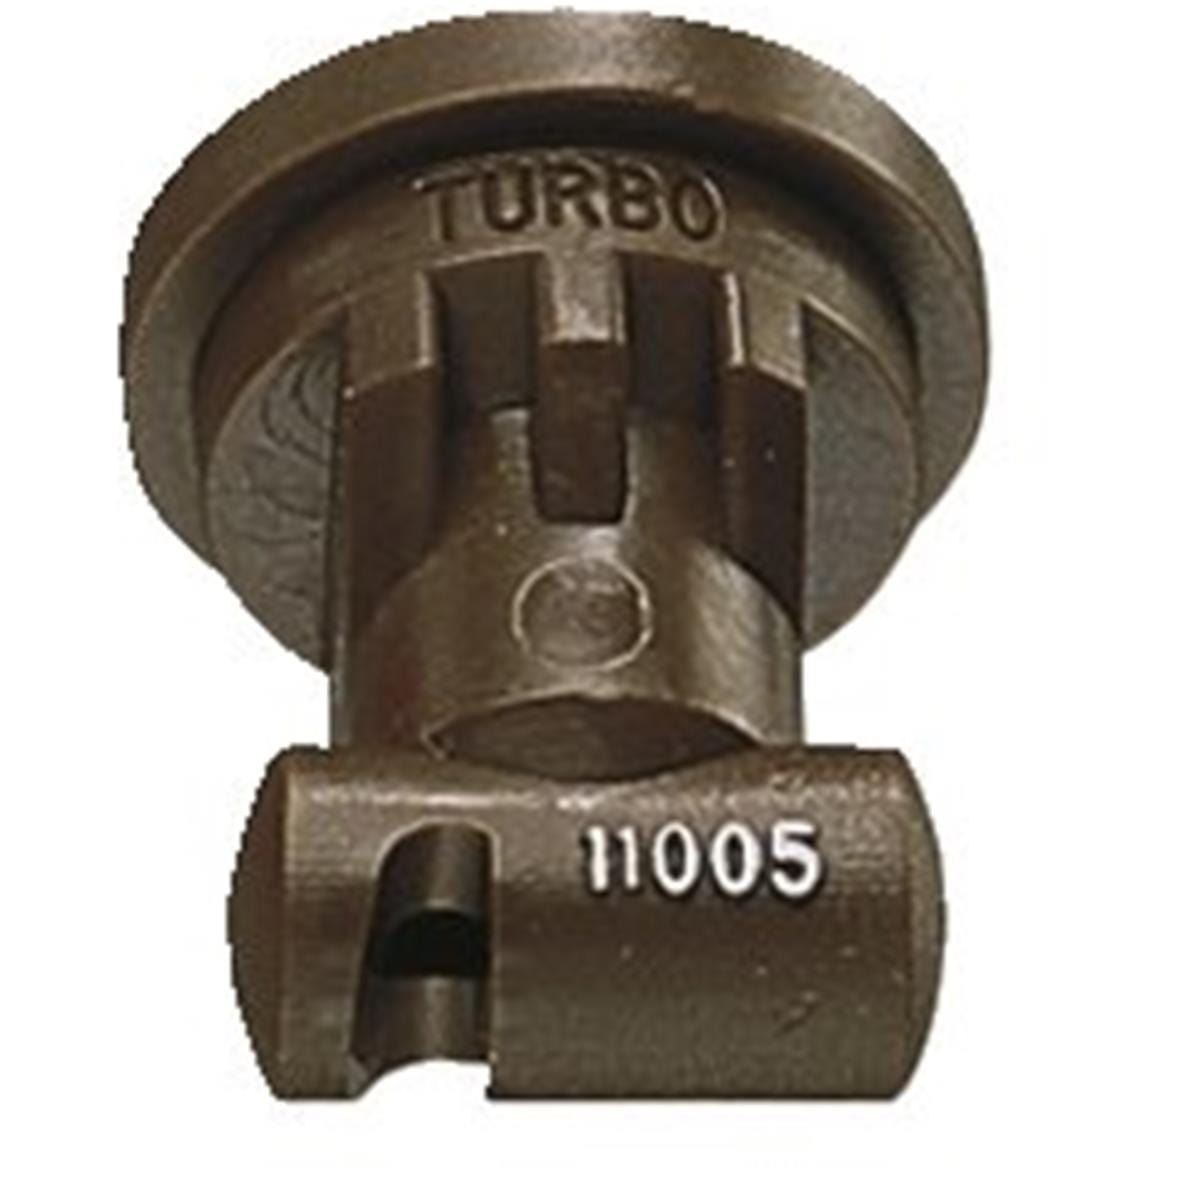 Turbo TeeJet Nozzle